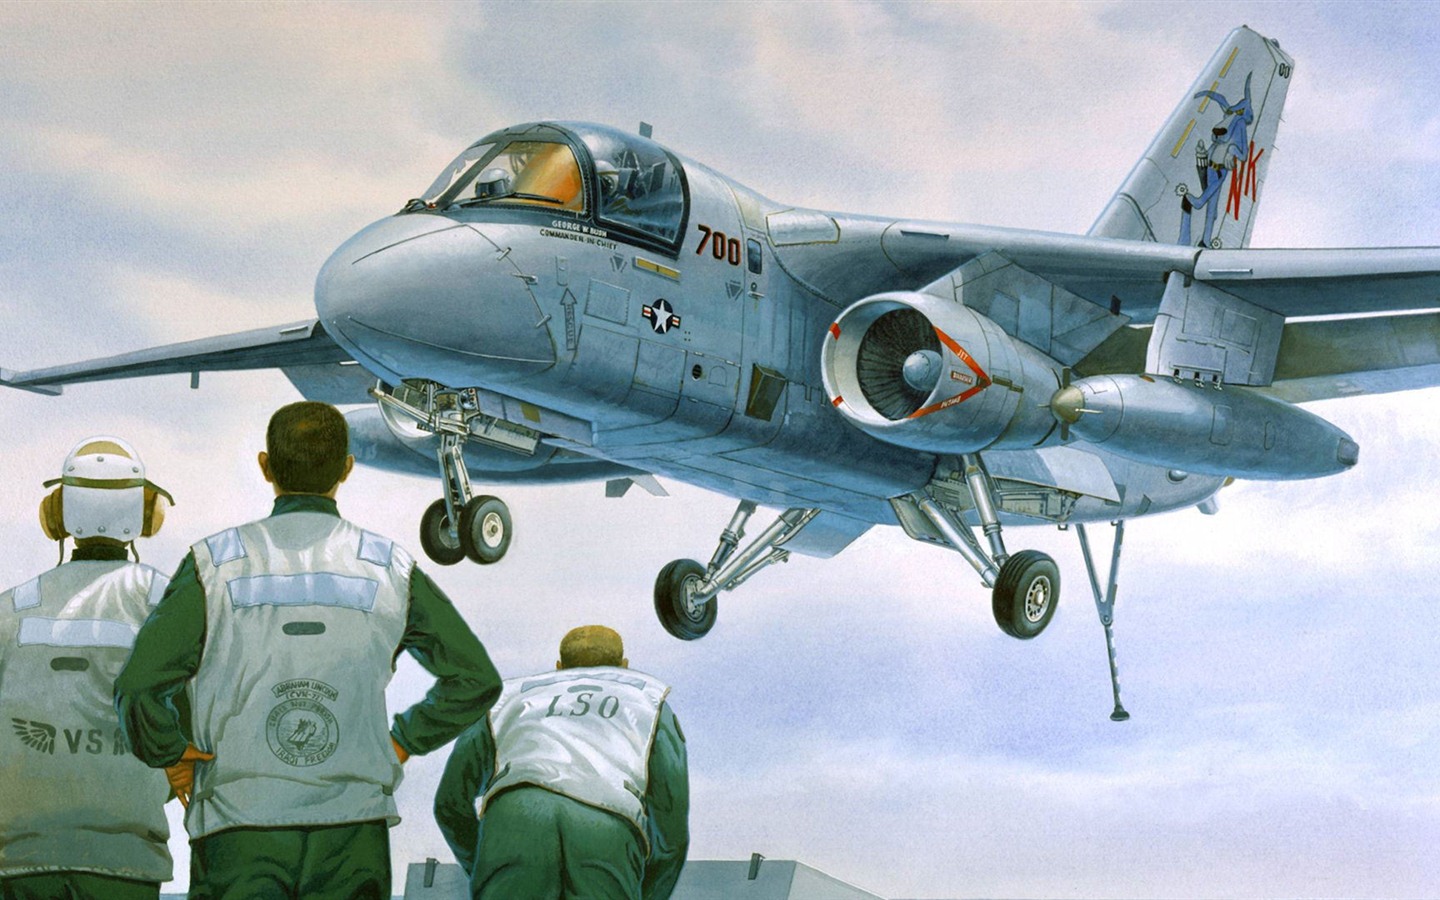 Militares vuelo de las aeronaves exquisitos pintura #7 - 1440x900